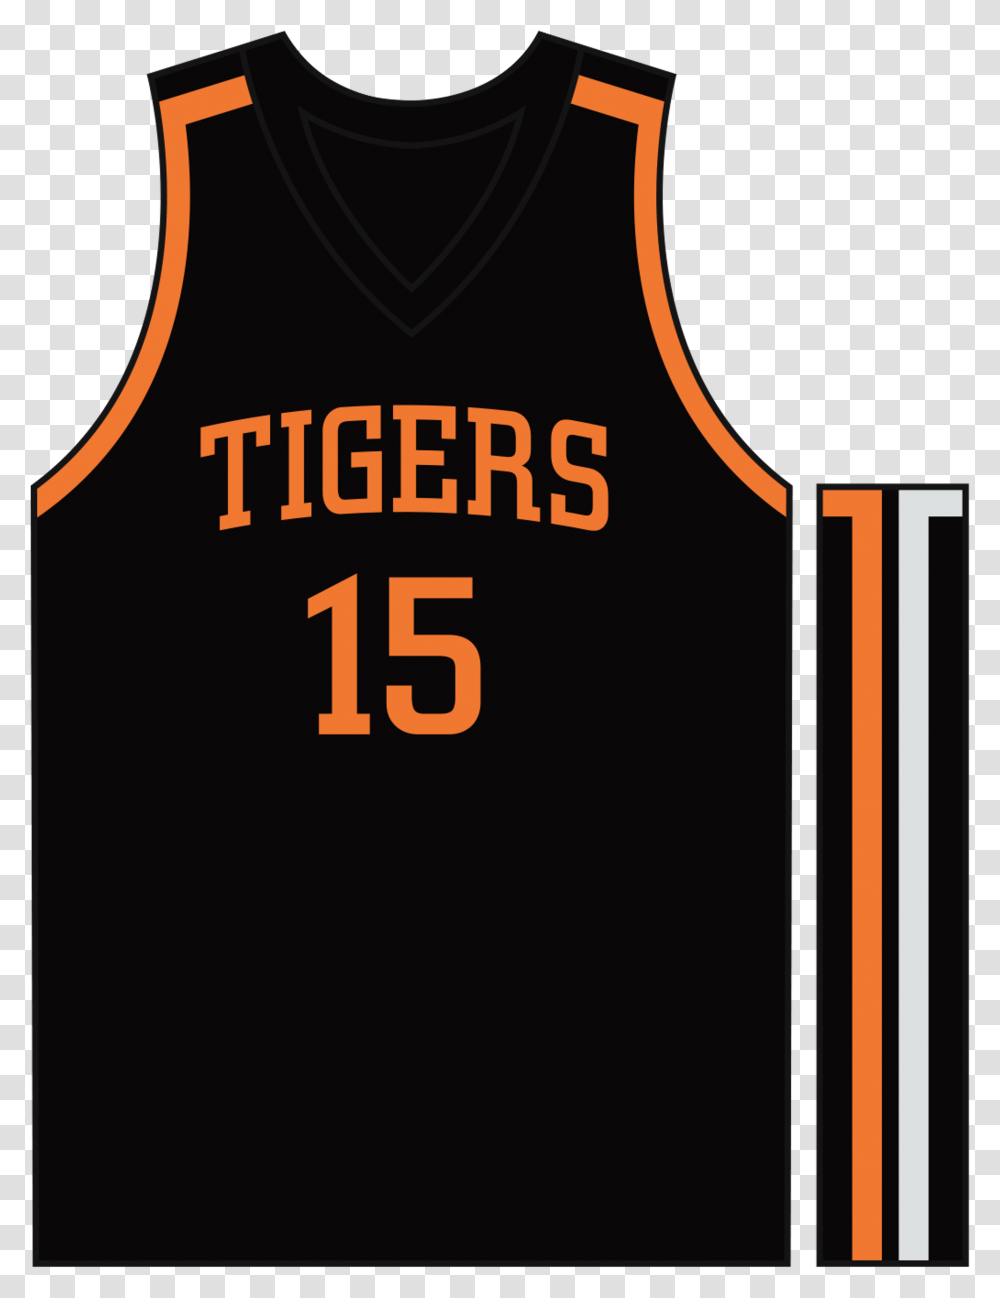 Usa Basketball Logo Basketball Jersey Design Black And Orange, Apparel, Shirt, Tank Top Transparent Png